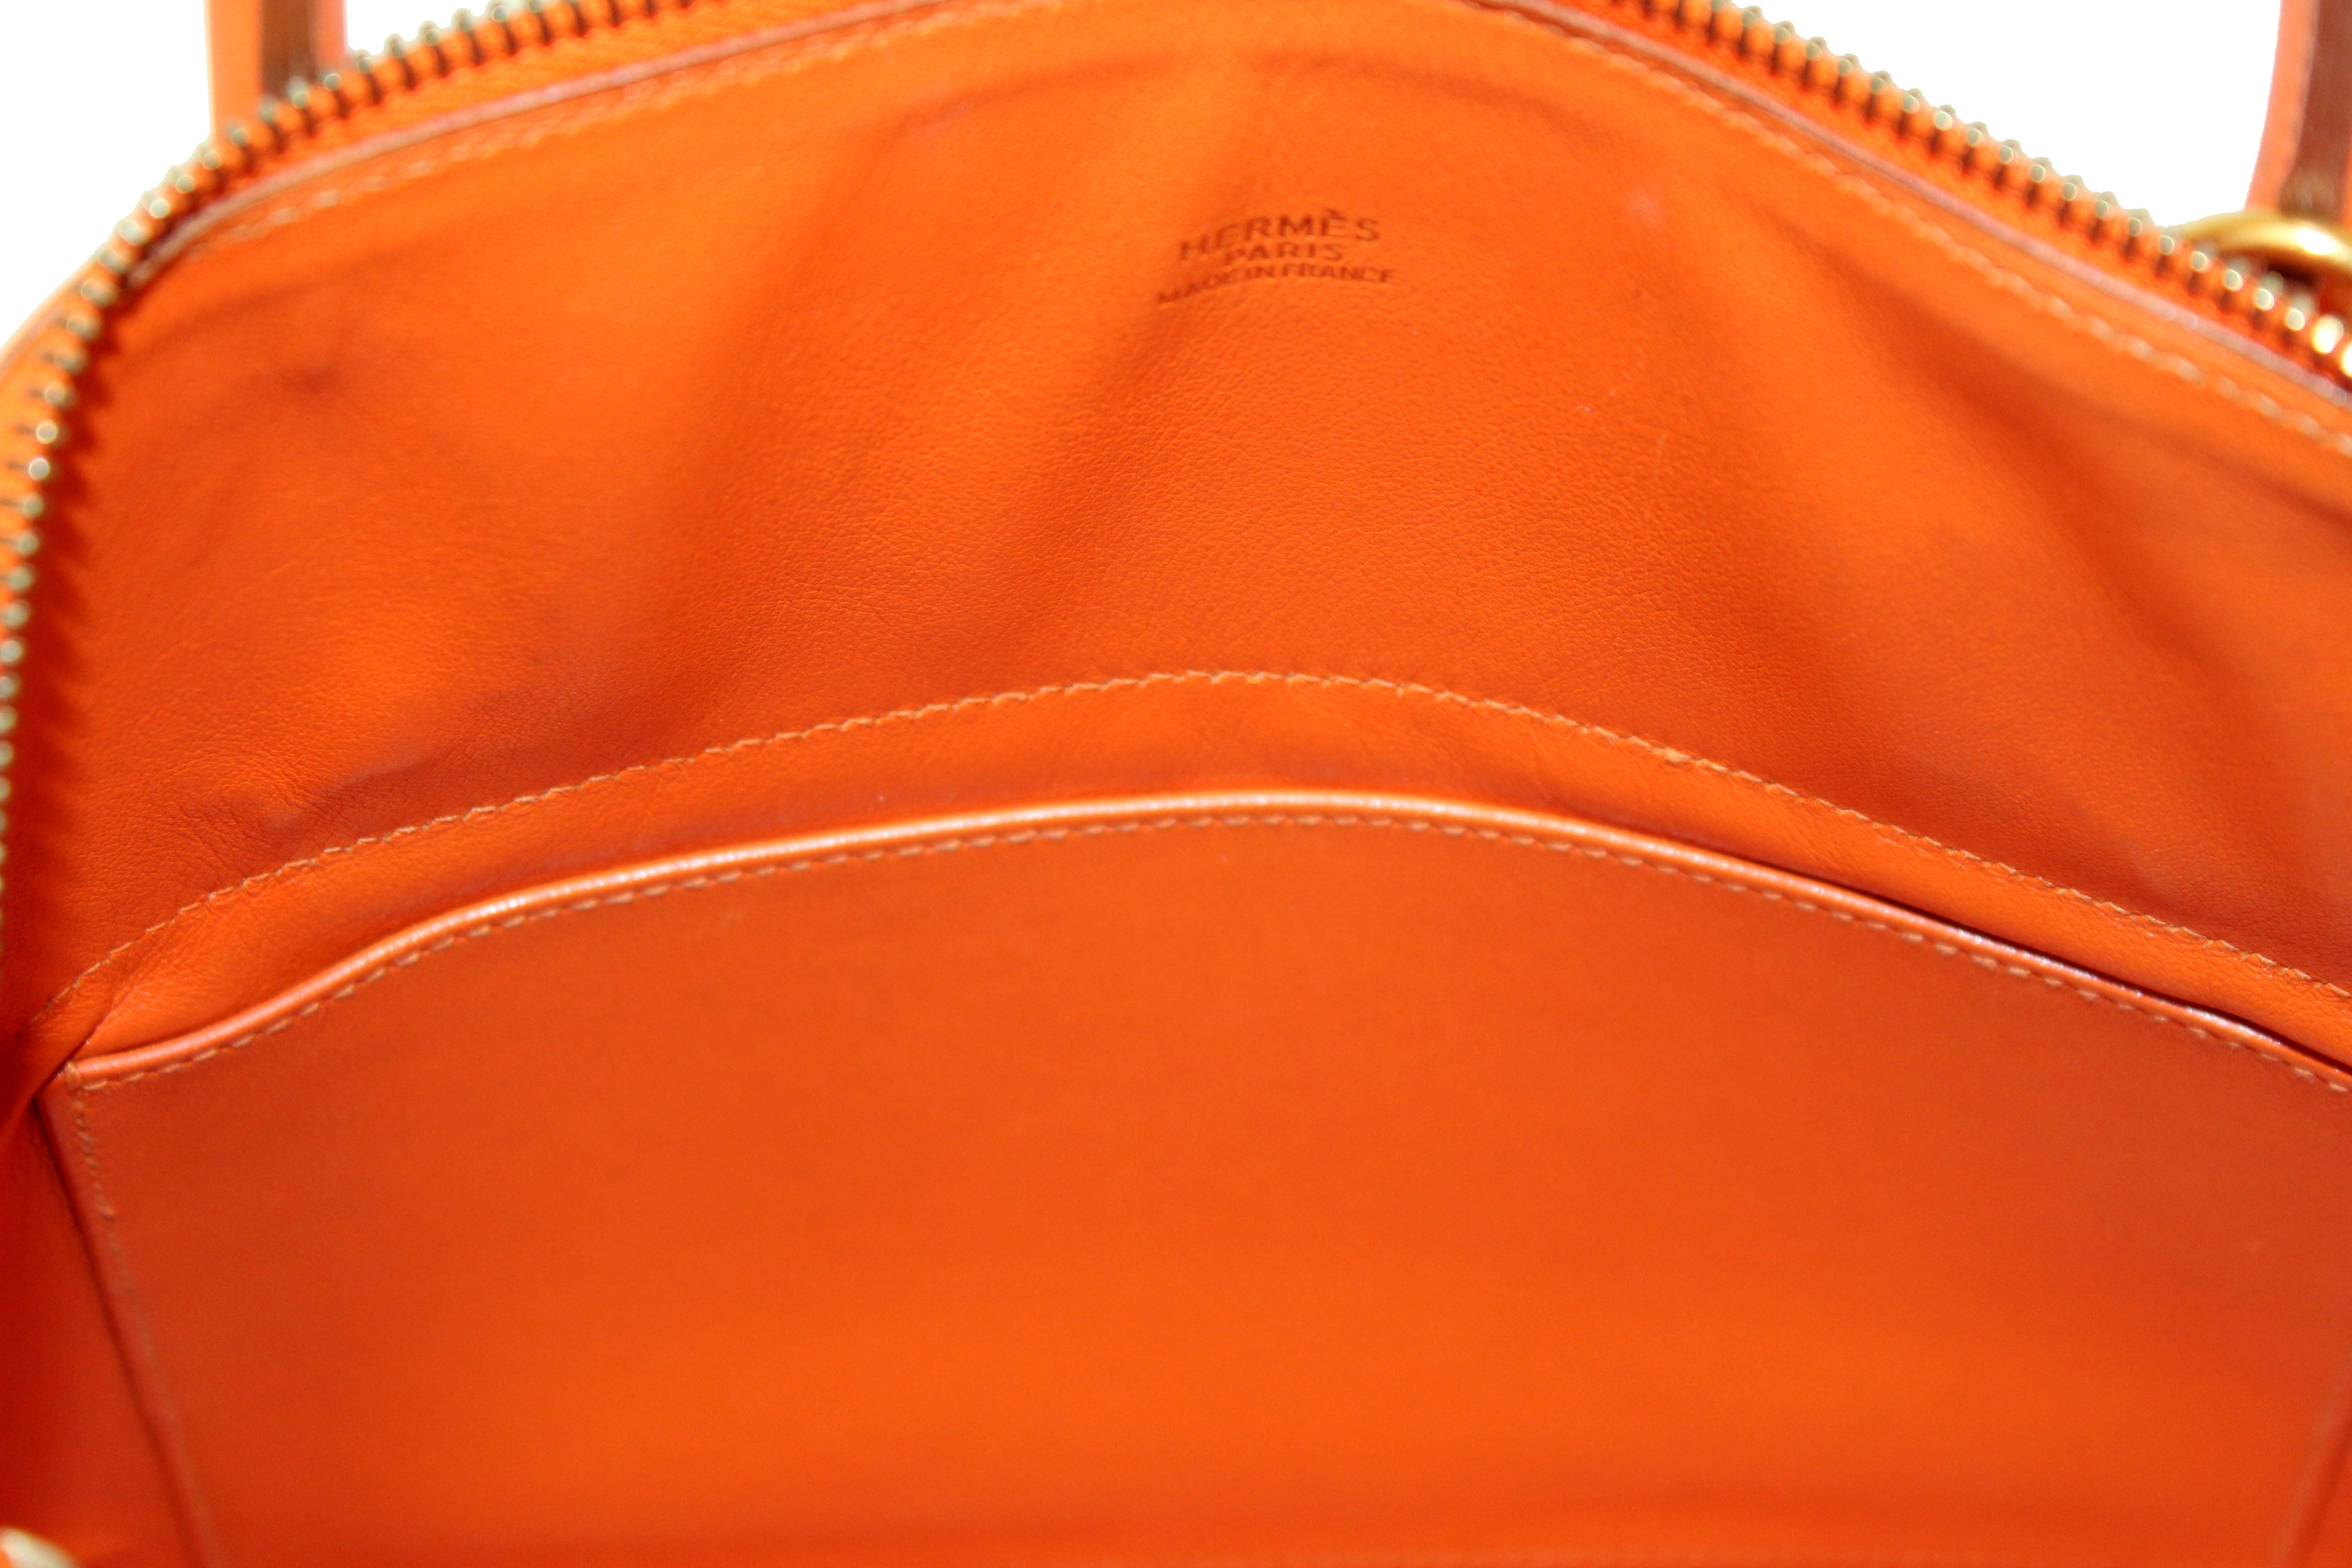 Hermes Bolide 31 Box Calf Leather Handbag/Shoulder Bag